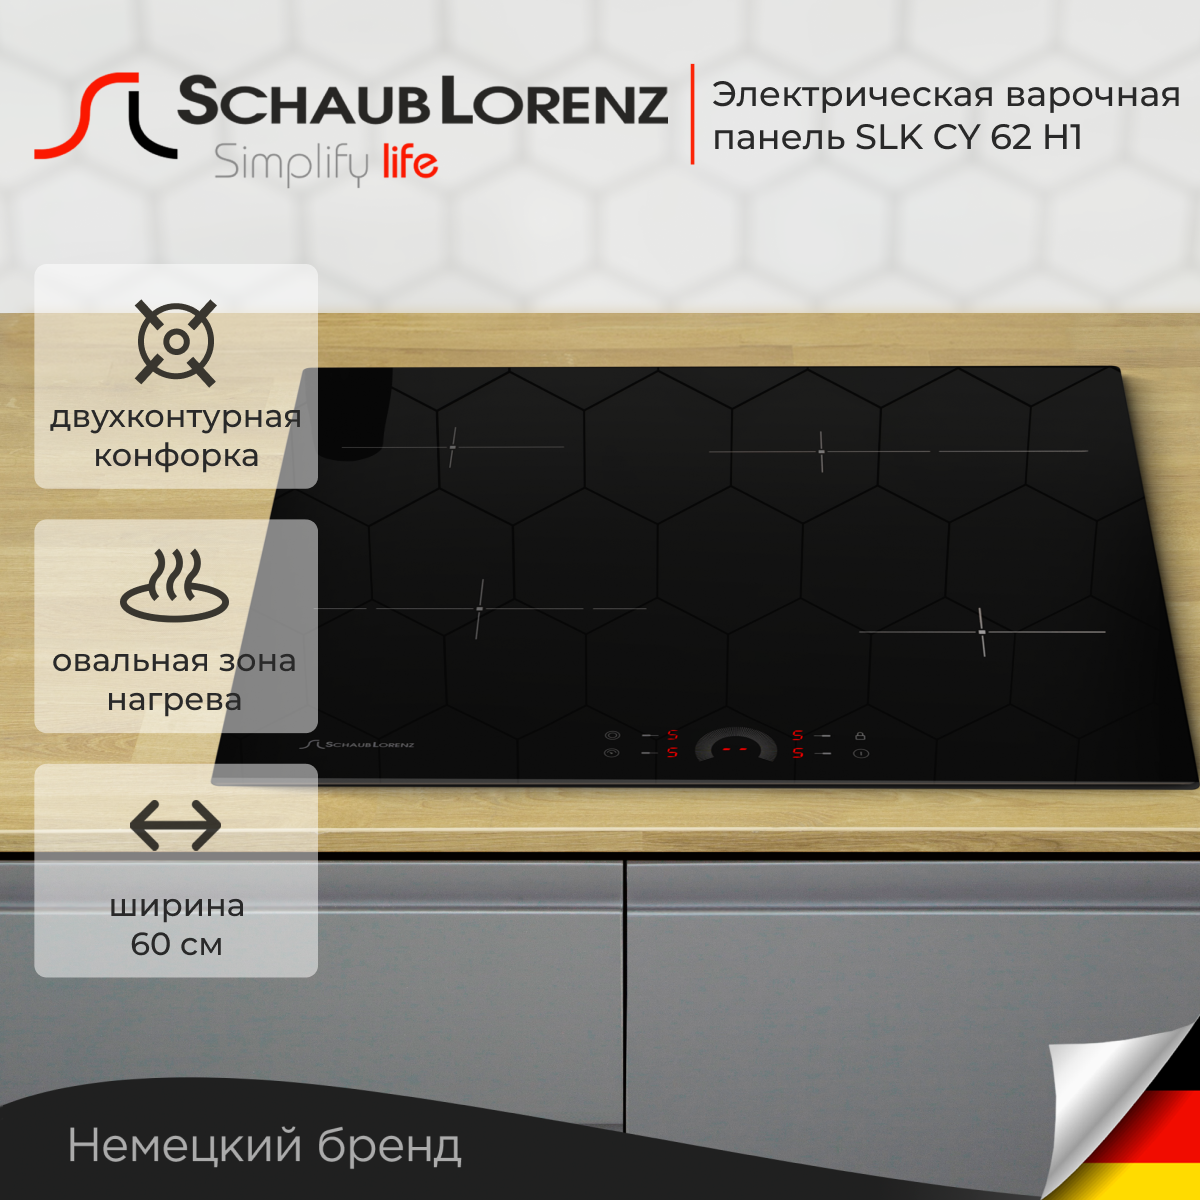 Варочная панель встраиваемая электрическая Schaub Lorenz SLK CY 62 H1, 60см, чёрный, стеклокерамика